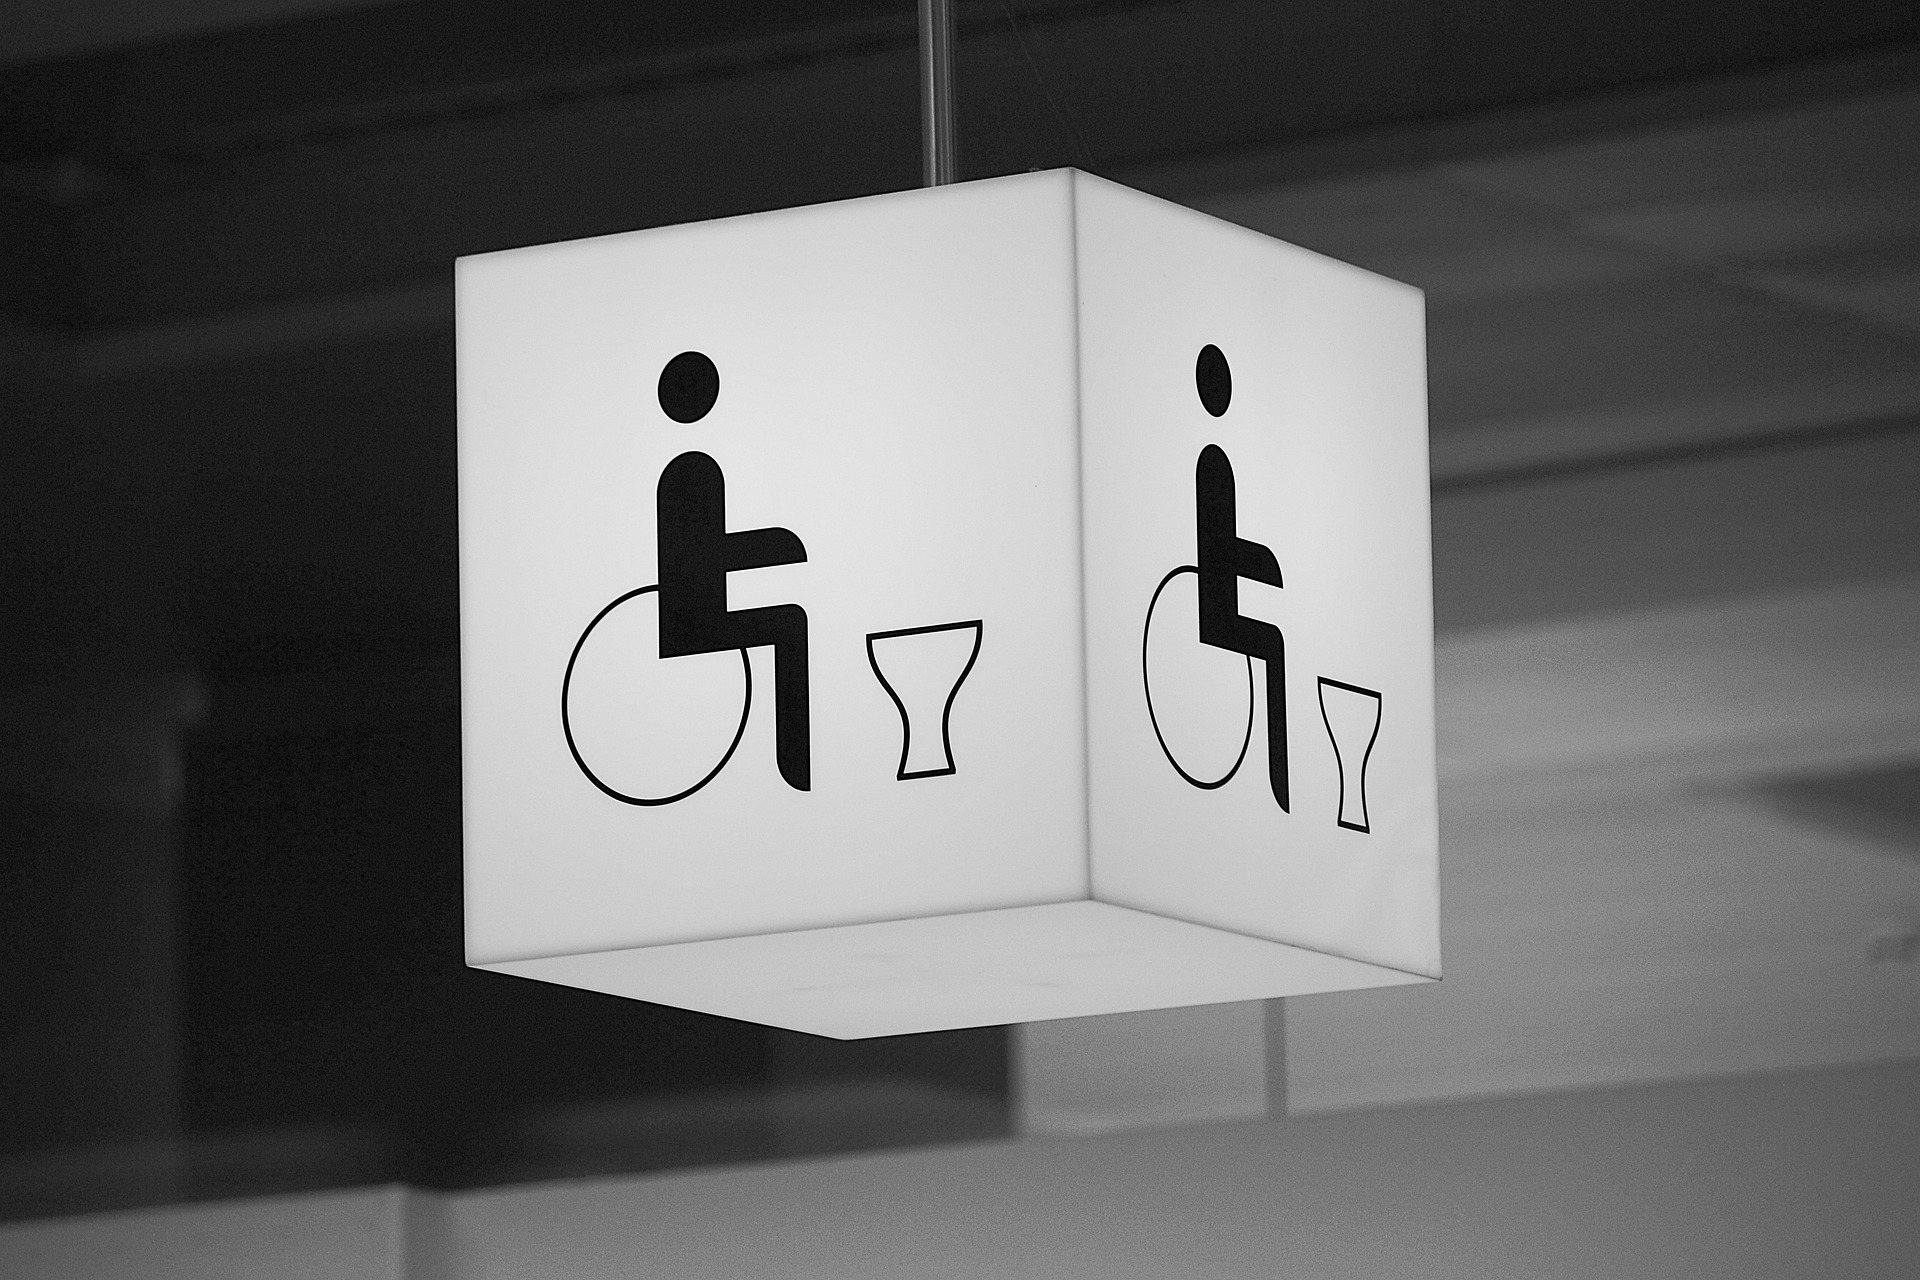 Dieses Bild zeigt ein Toilettensymbol als Symbolbild für den Euroschlüssel